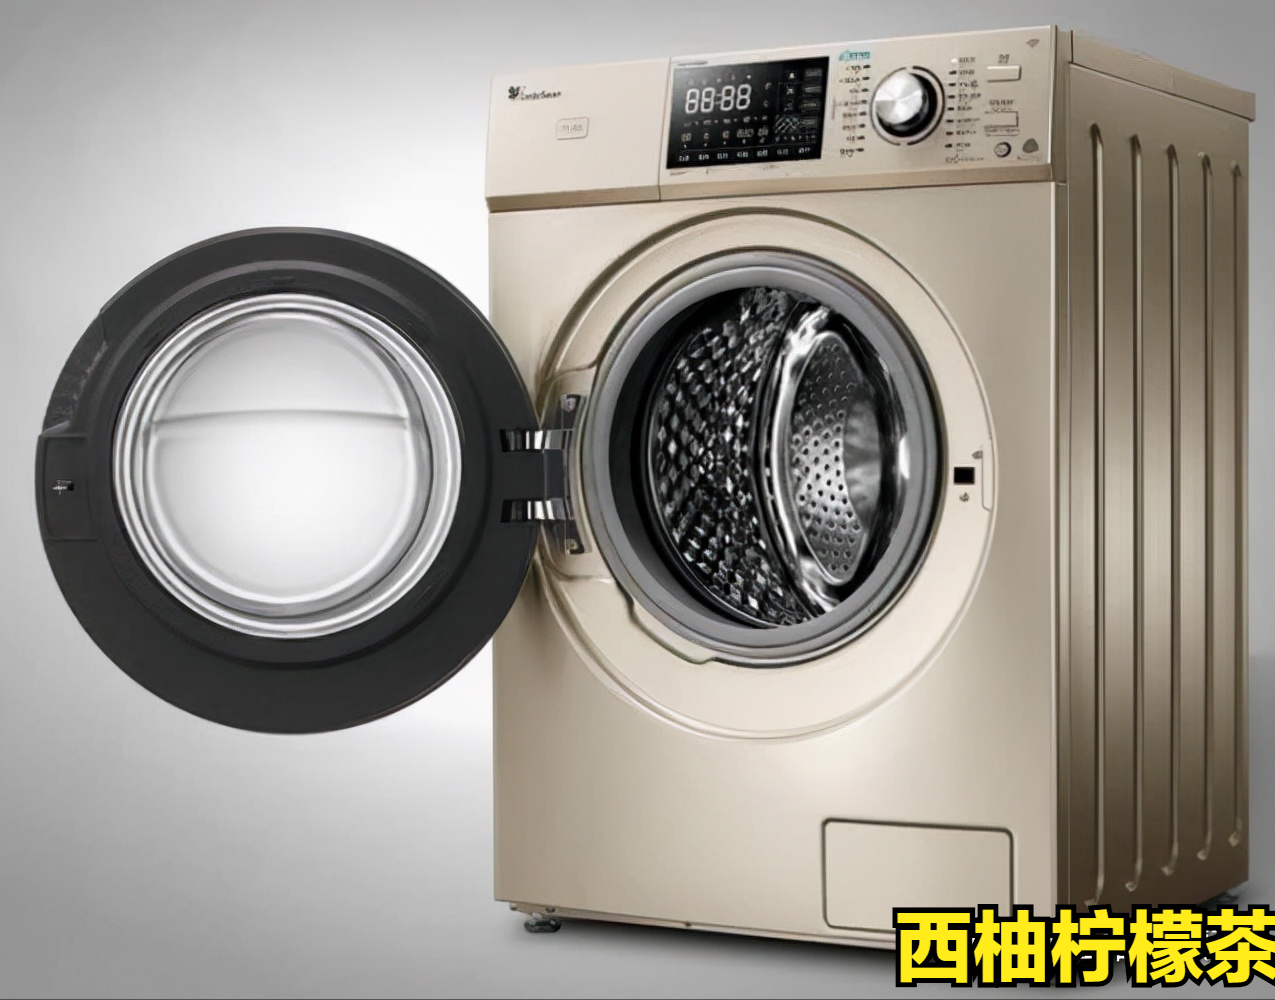 家用洗衣机是滚筒的好还是波轮的好？波轮洗衣机逐渐被淘汰了吗？